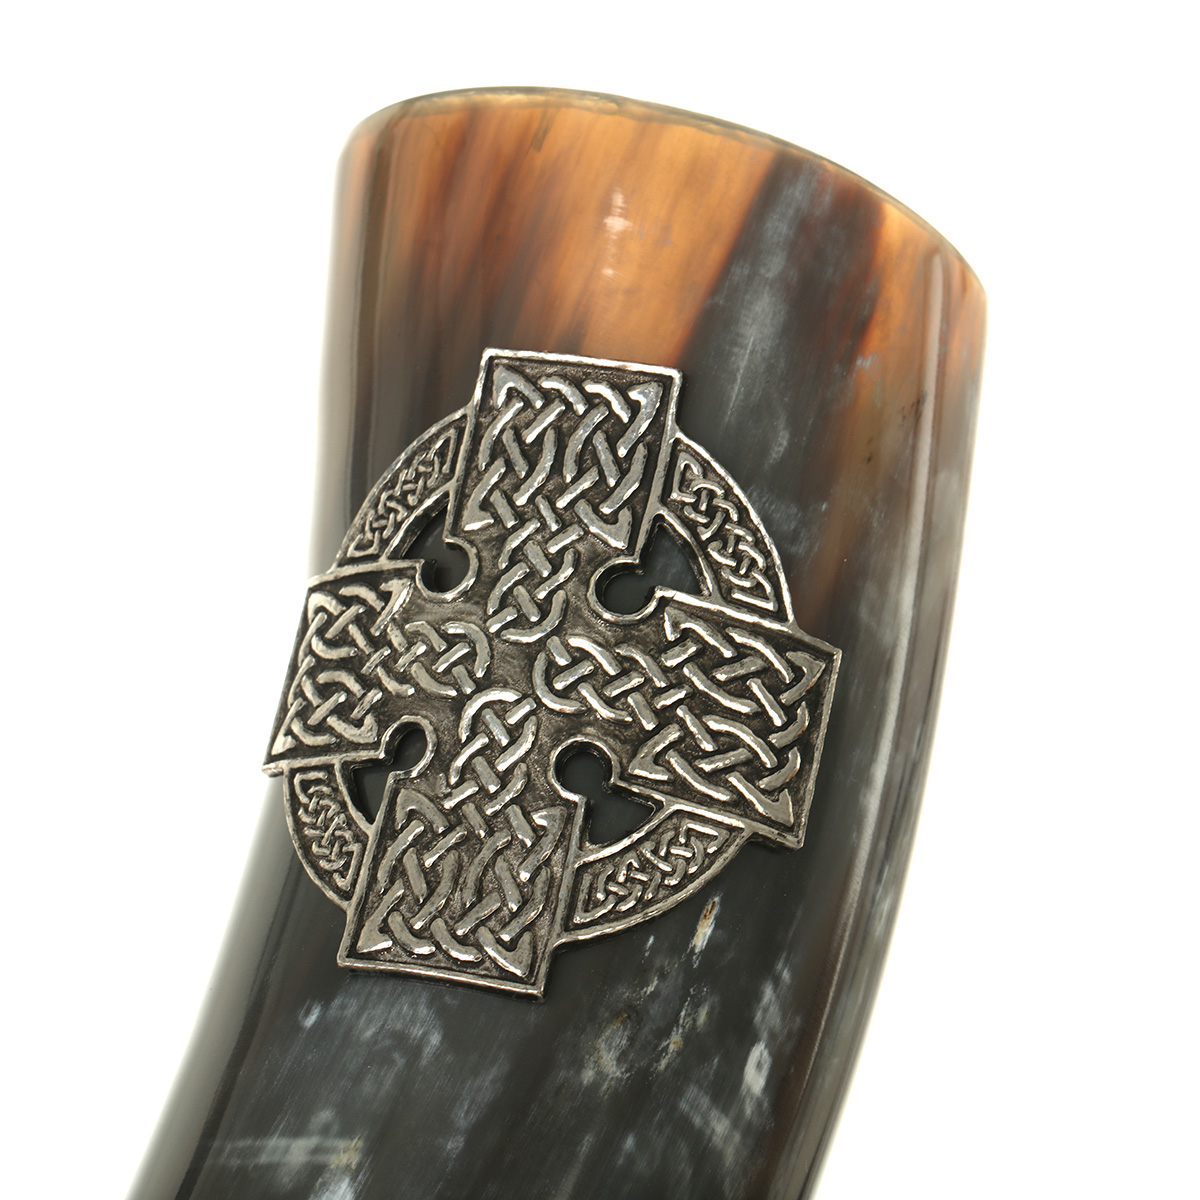 Poliertes Trinkhorn mit keltischem Kreuz aus Zinn - ca. 0,5 Liter